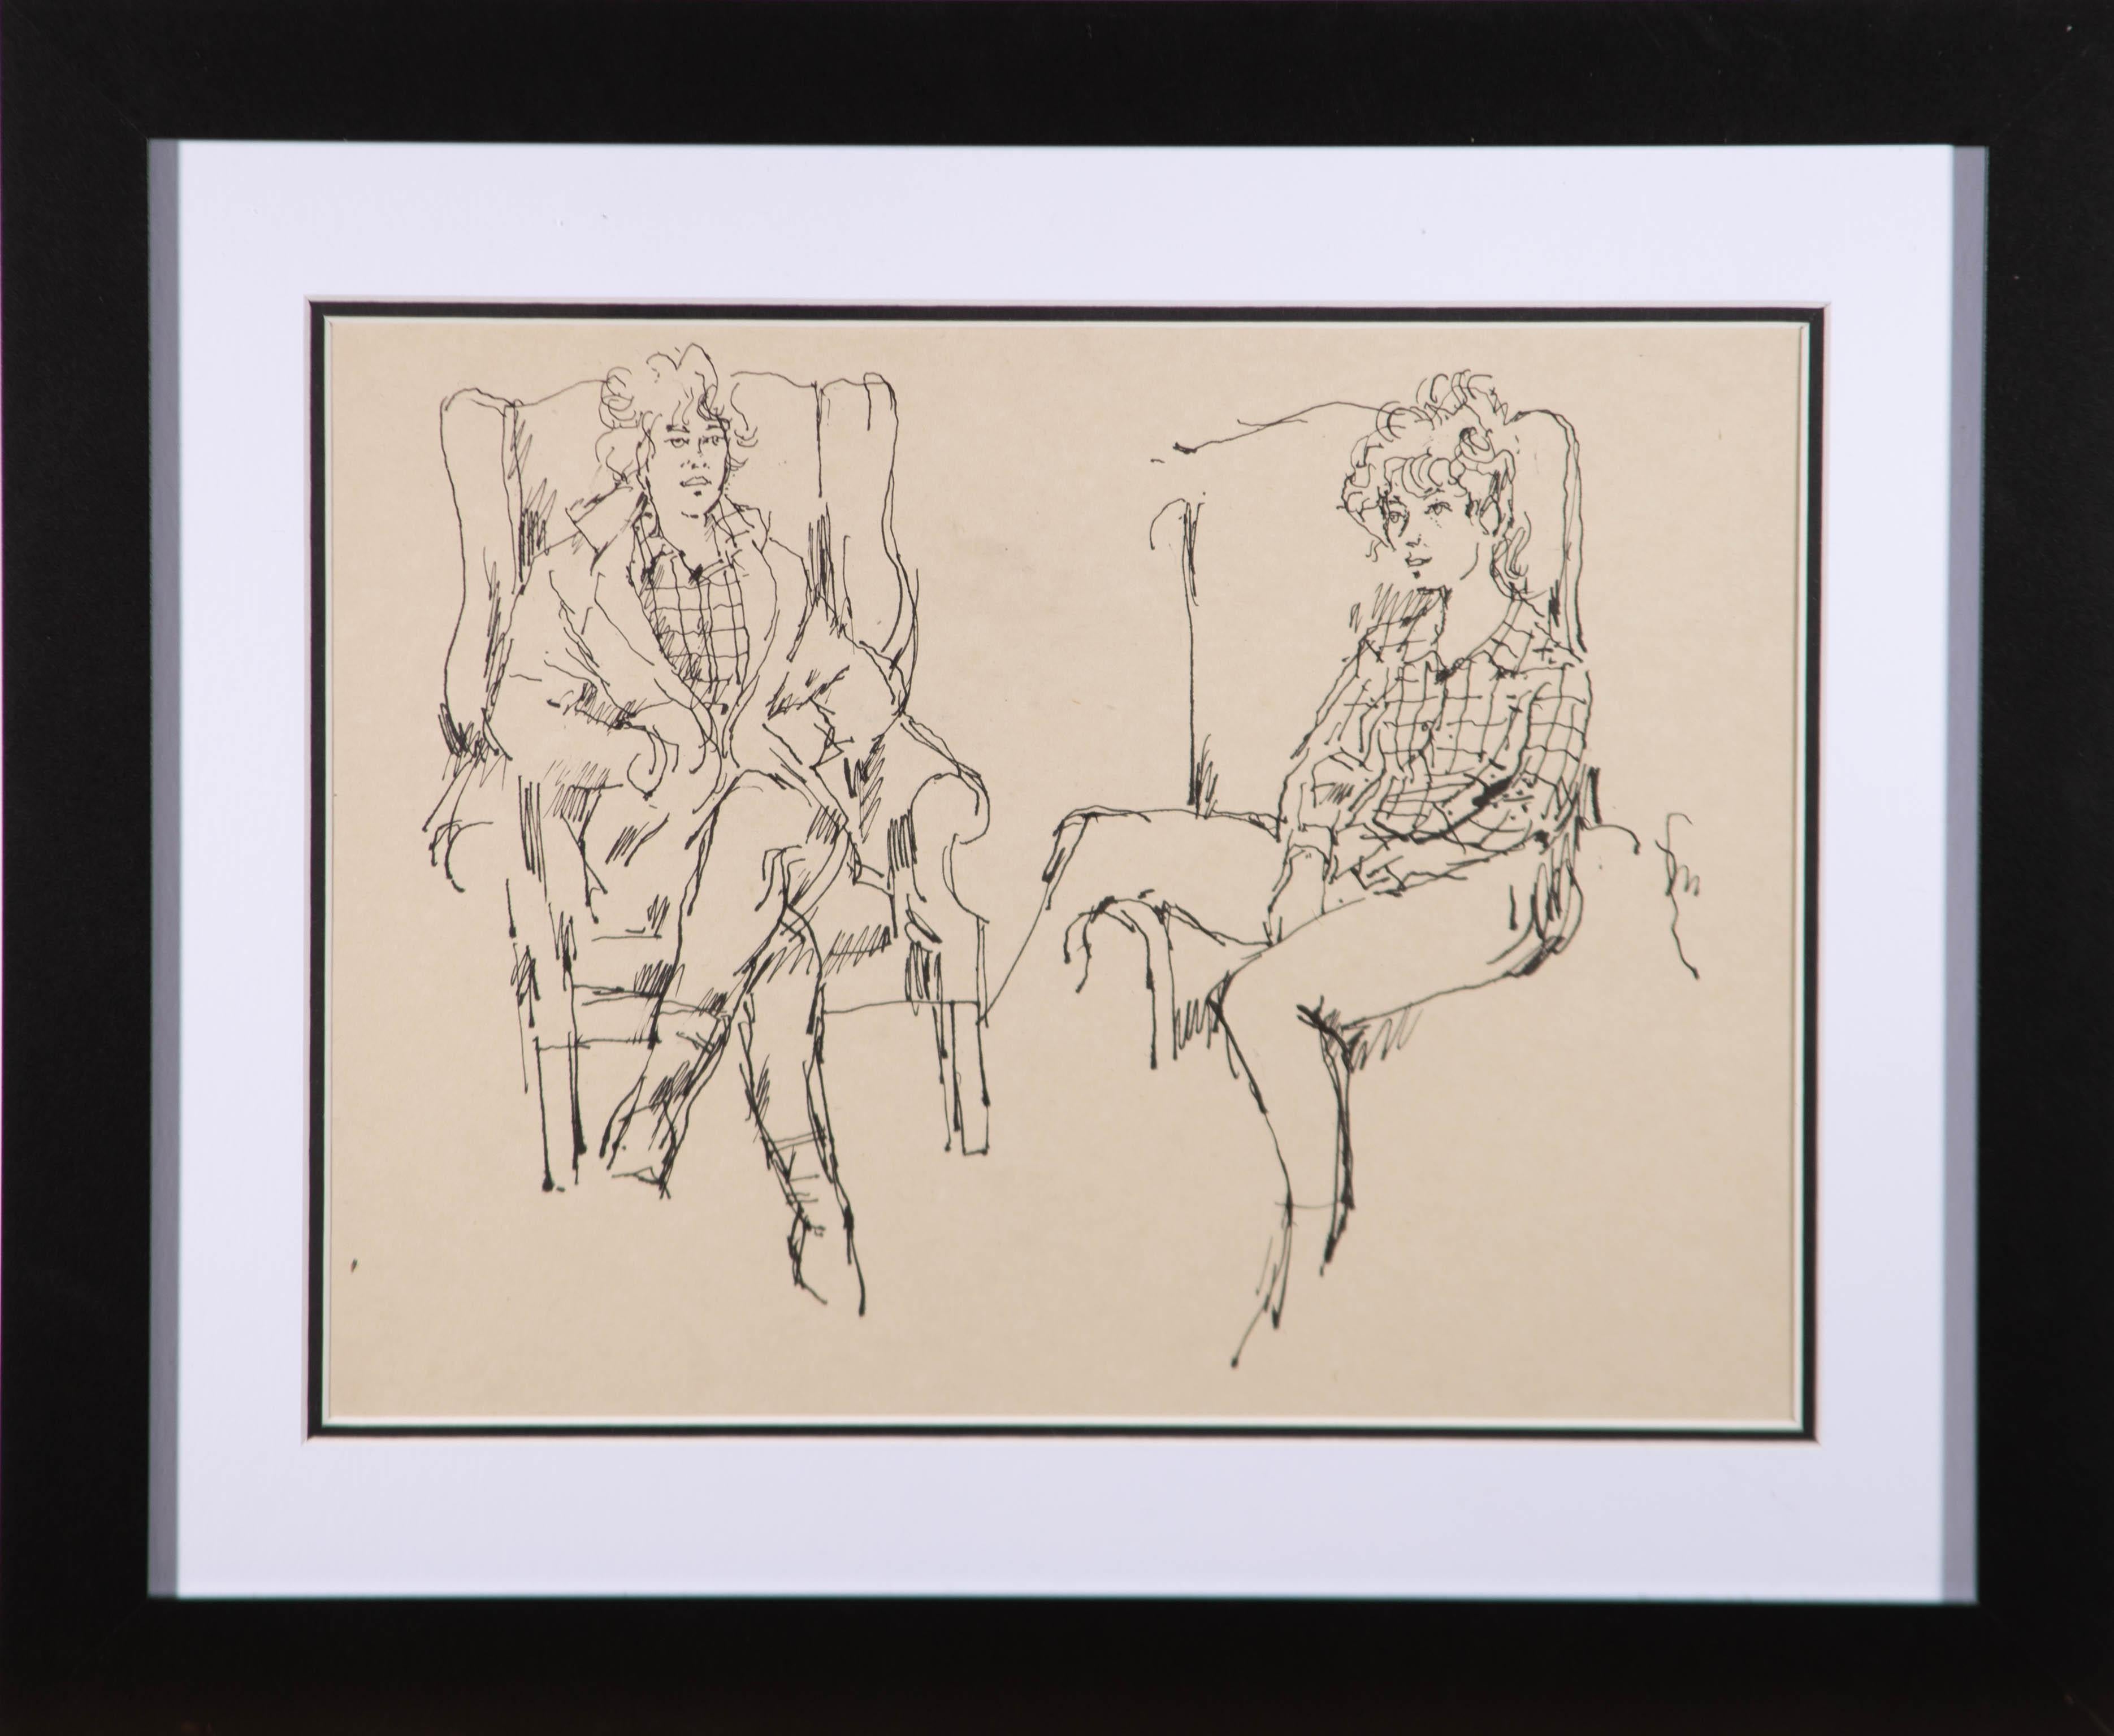 Un beau dessin à la plume et à l'encre de l'artiste Peter Collins, représentant deux études de la même figure assise sur un fauteuil. Non signée. Bien présenté dans un montage sur carte blanc sur noir et dans un cadre noir contemporain simple. On a